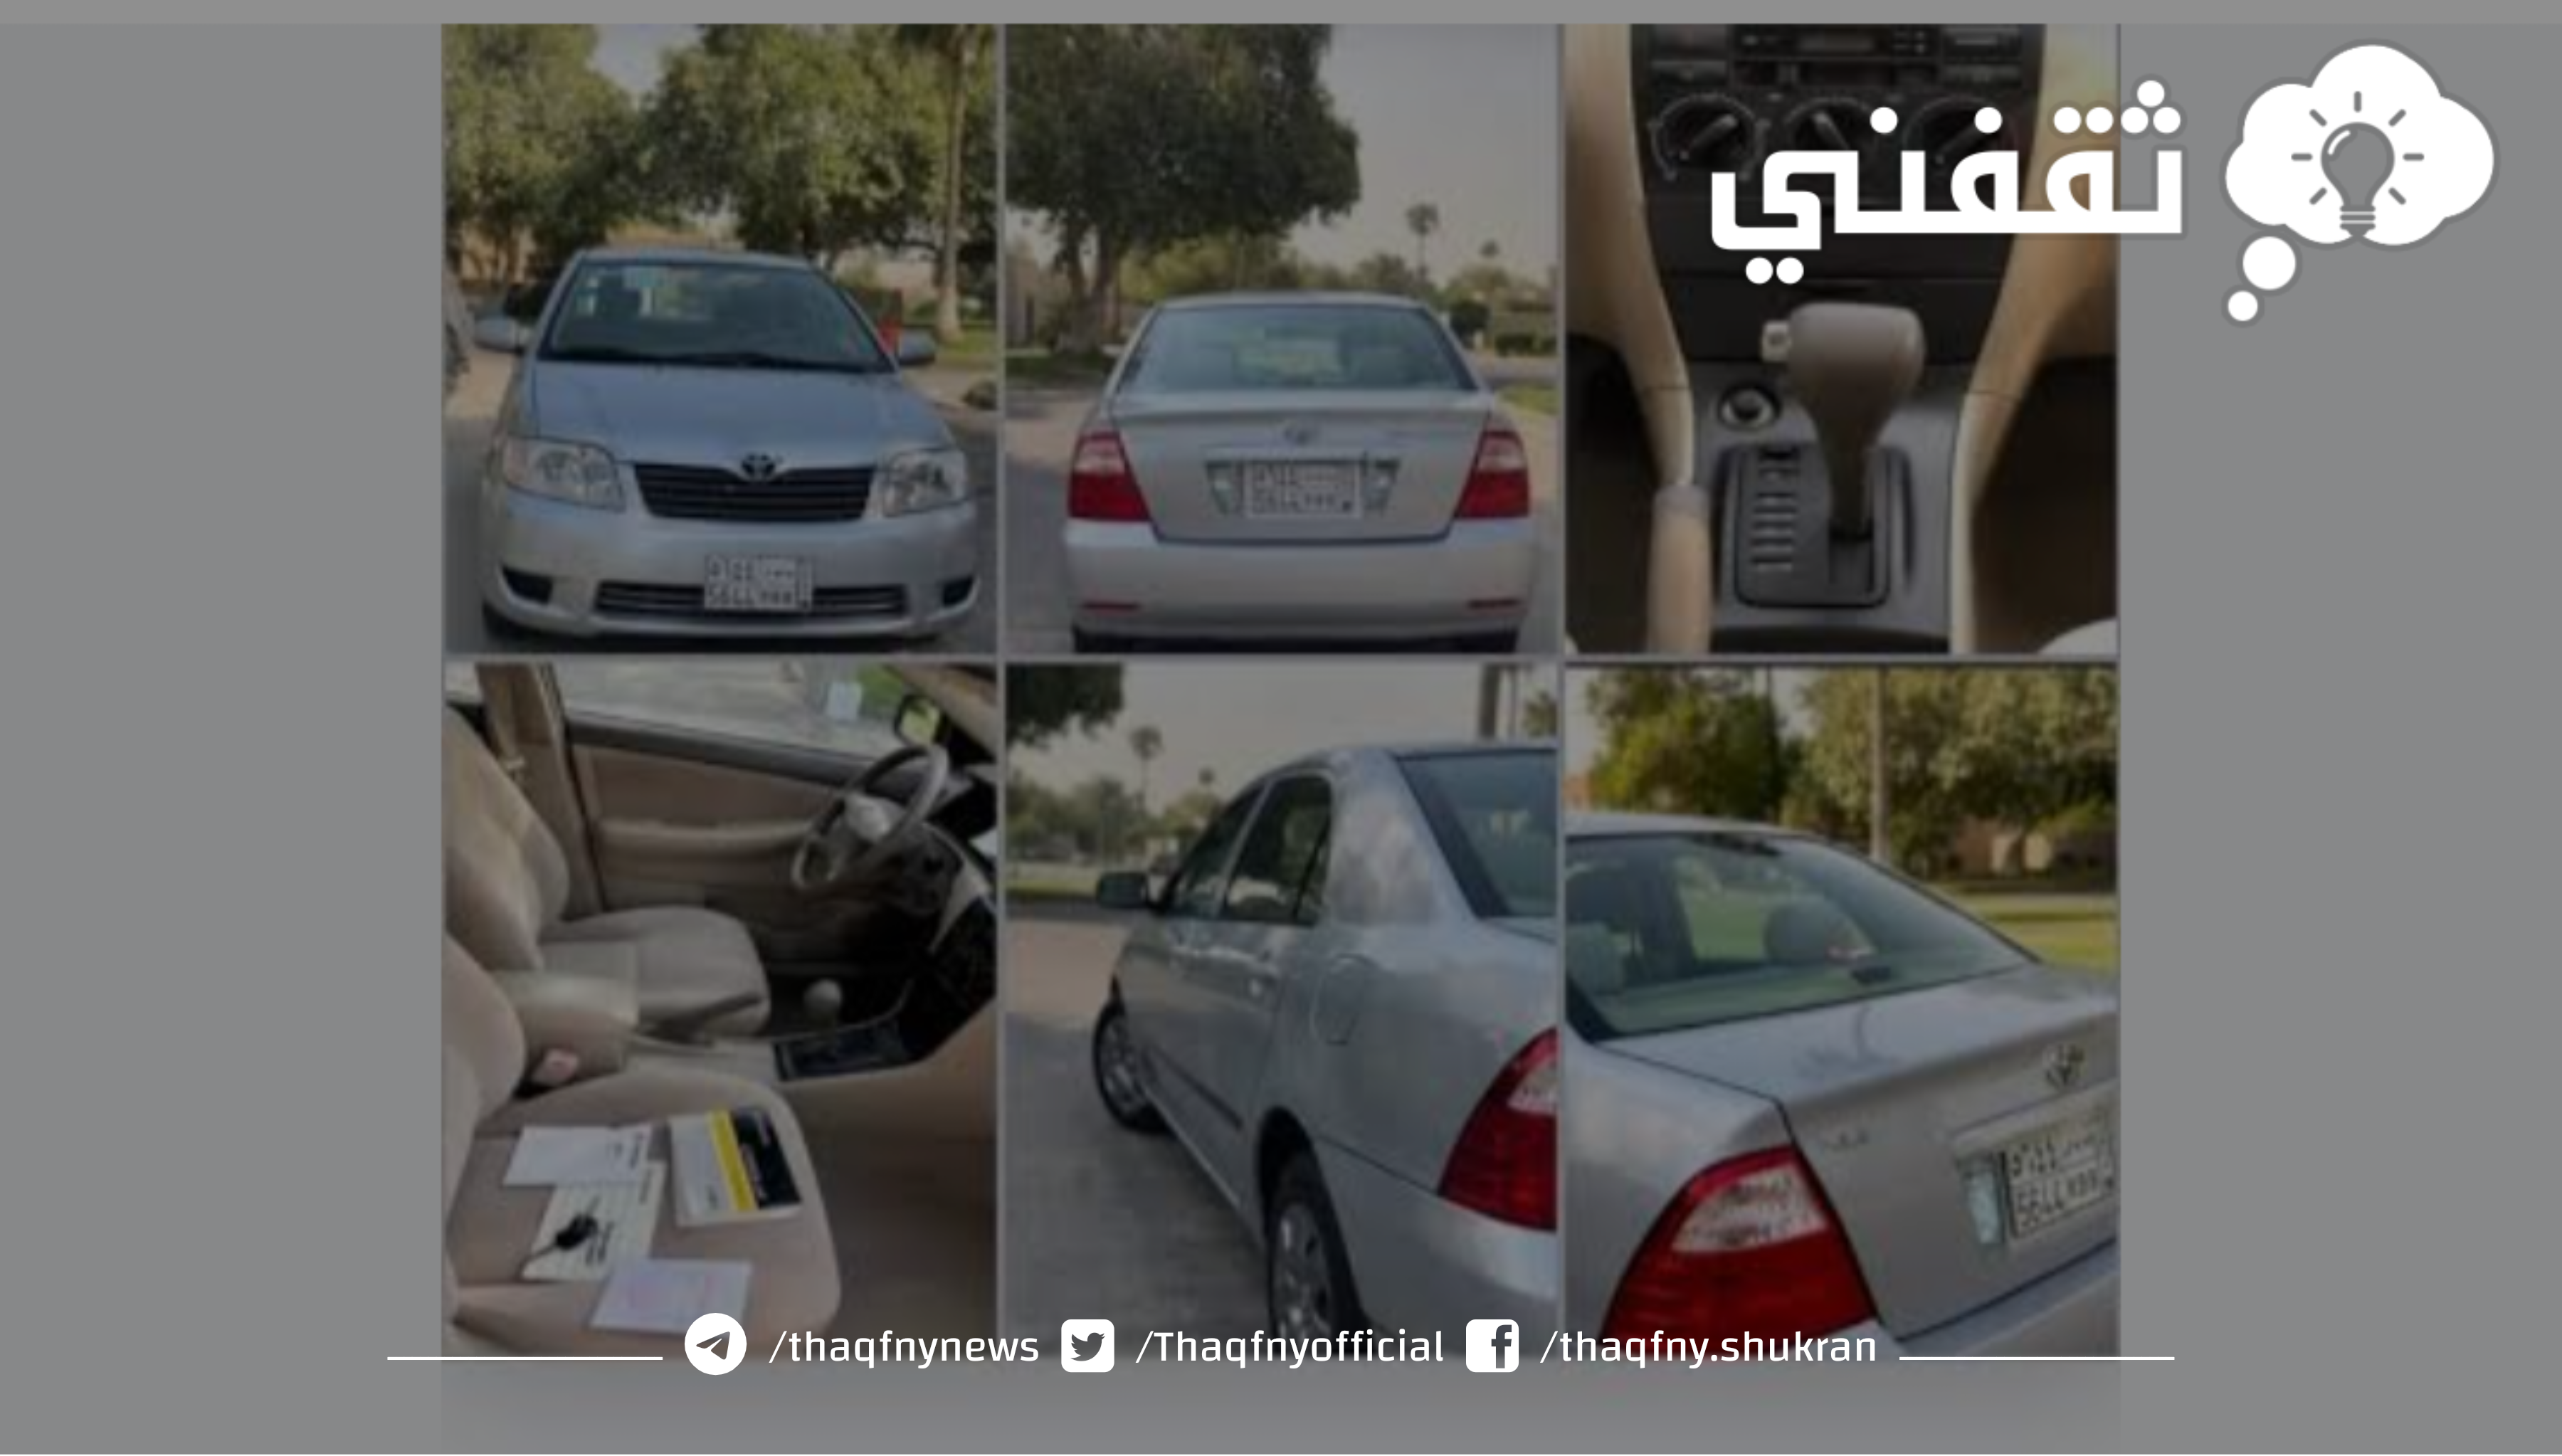 ارخص سيارات هيونداي النترا مستعملة بالسعودية يبدأ من 18 ألف ريال